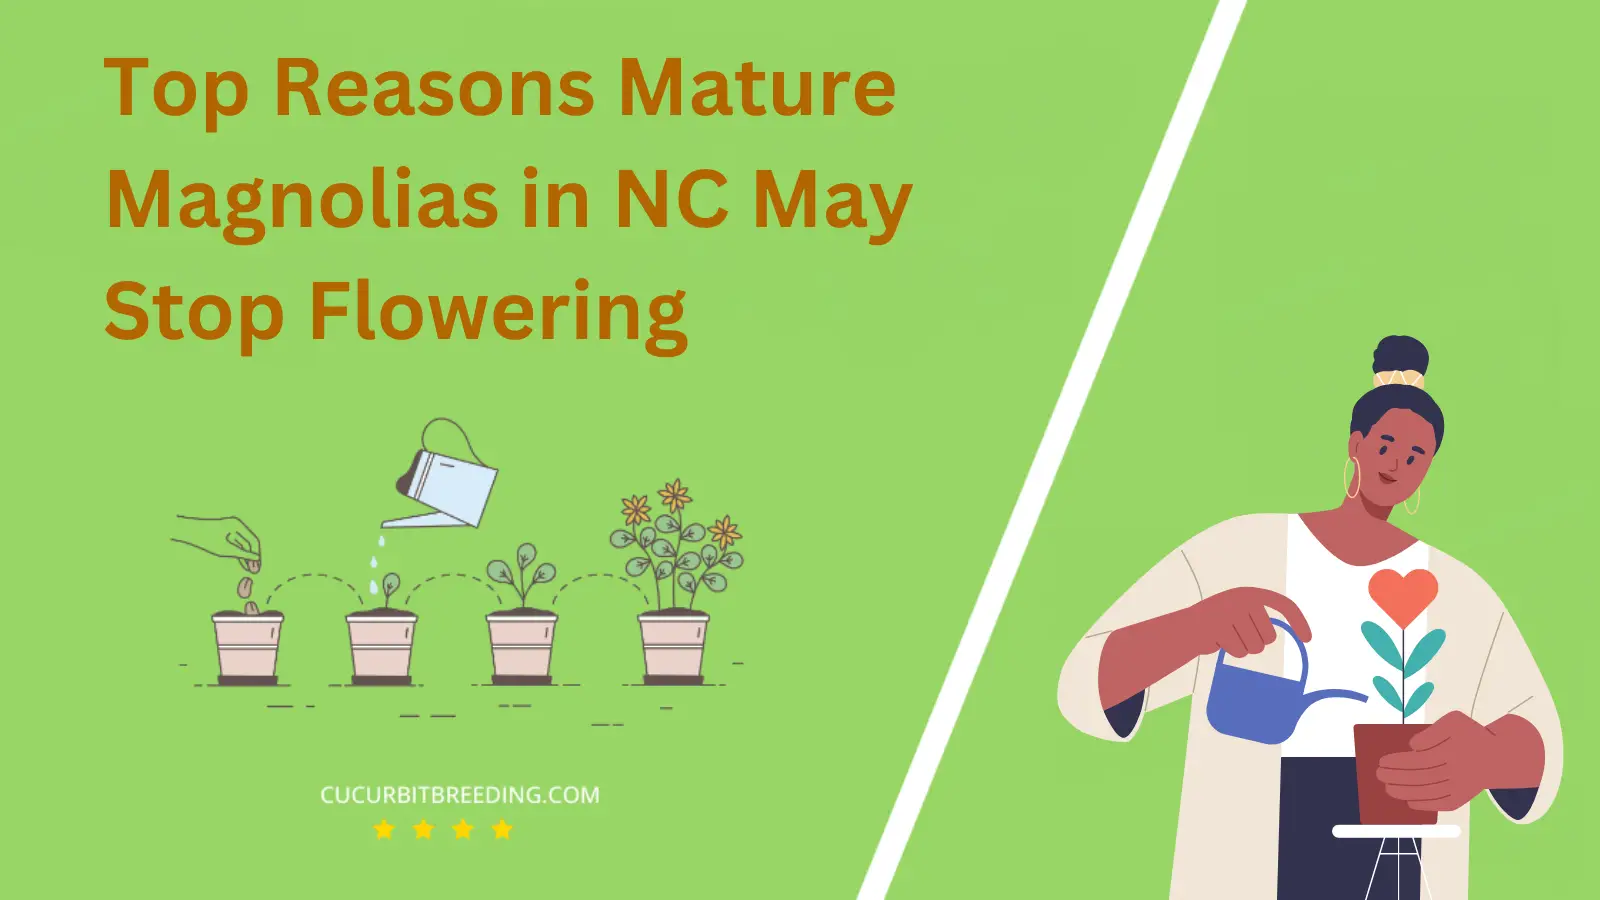 Top Reasons Mature Magnolias in NC May Stop Flowering